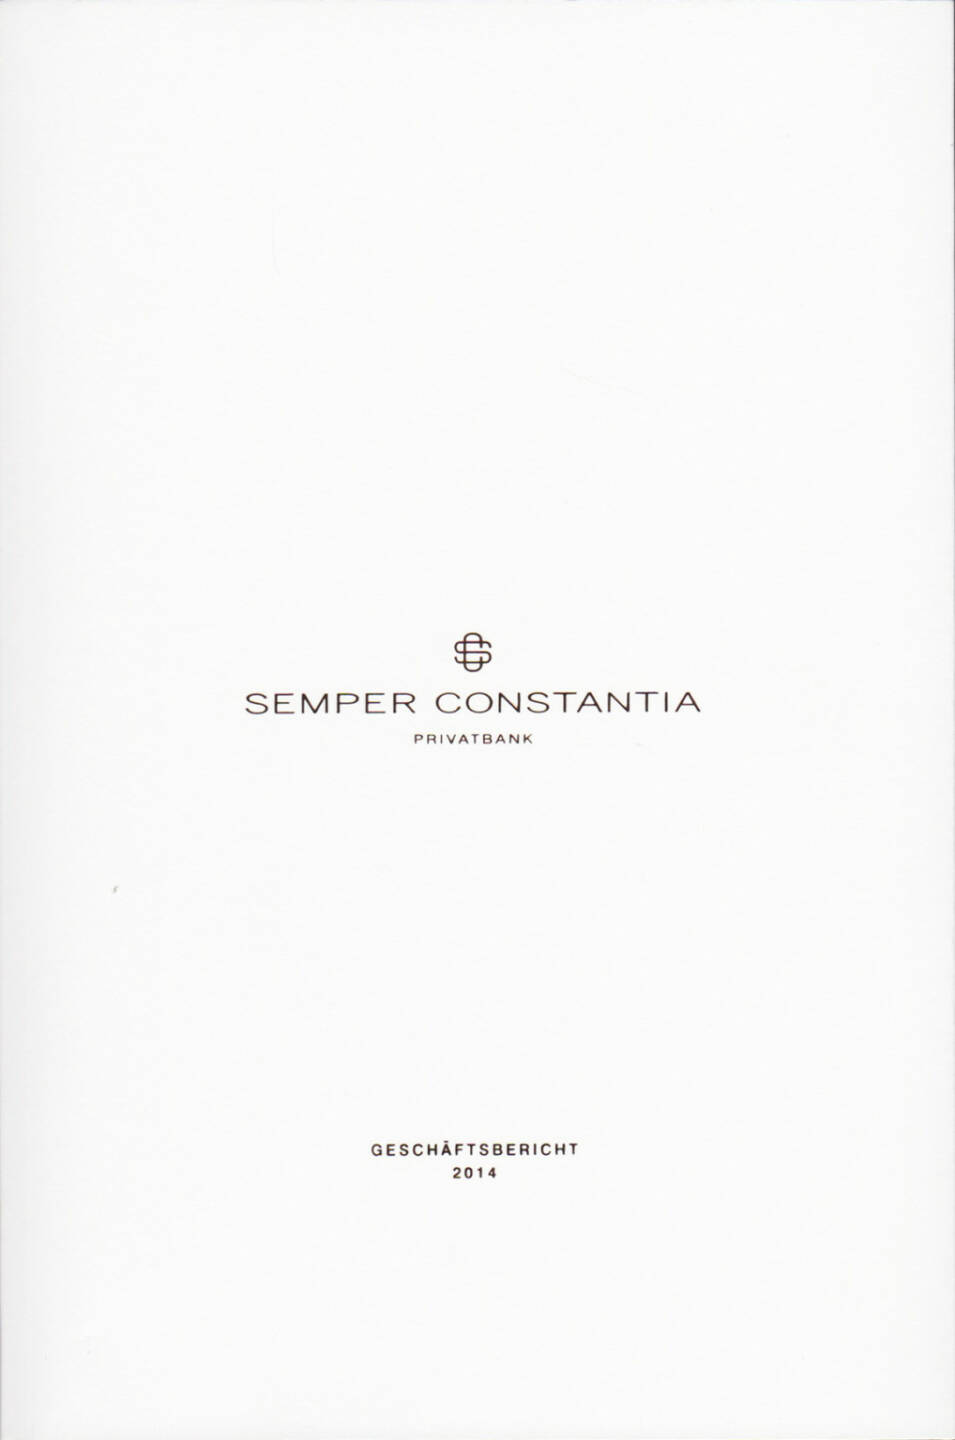 Semper Constantia Geschäftsbericht 2014 http://boerse-social.com/financebooks/show/semper_constantia_geschaftsbericht_2014